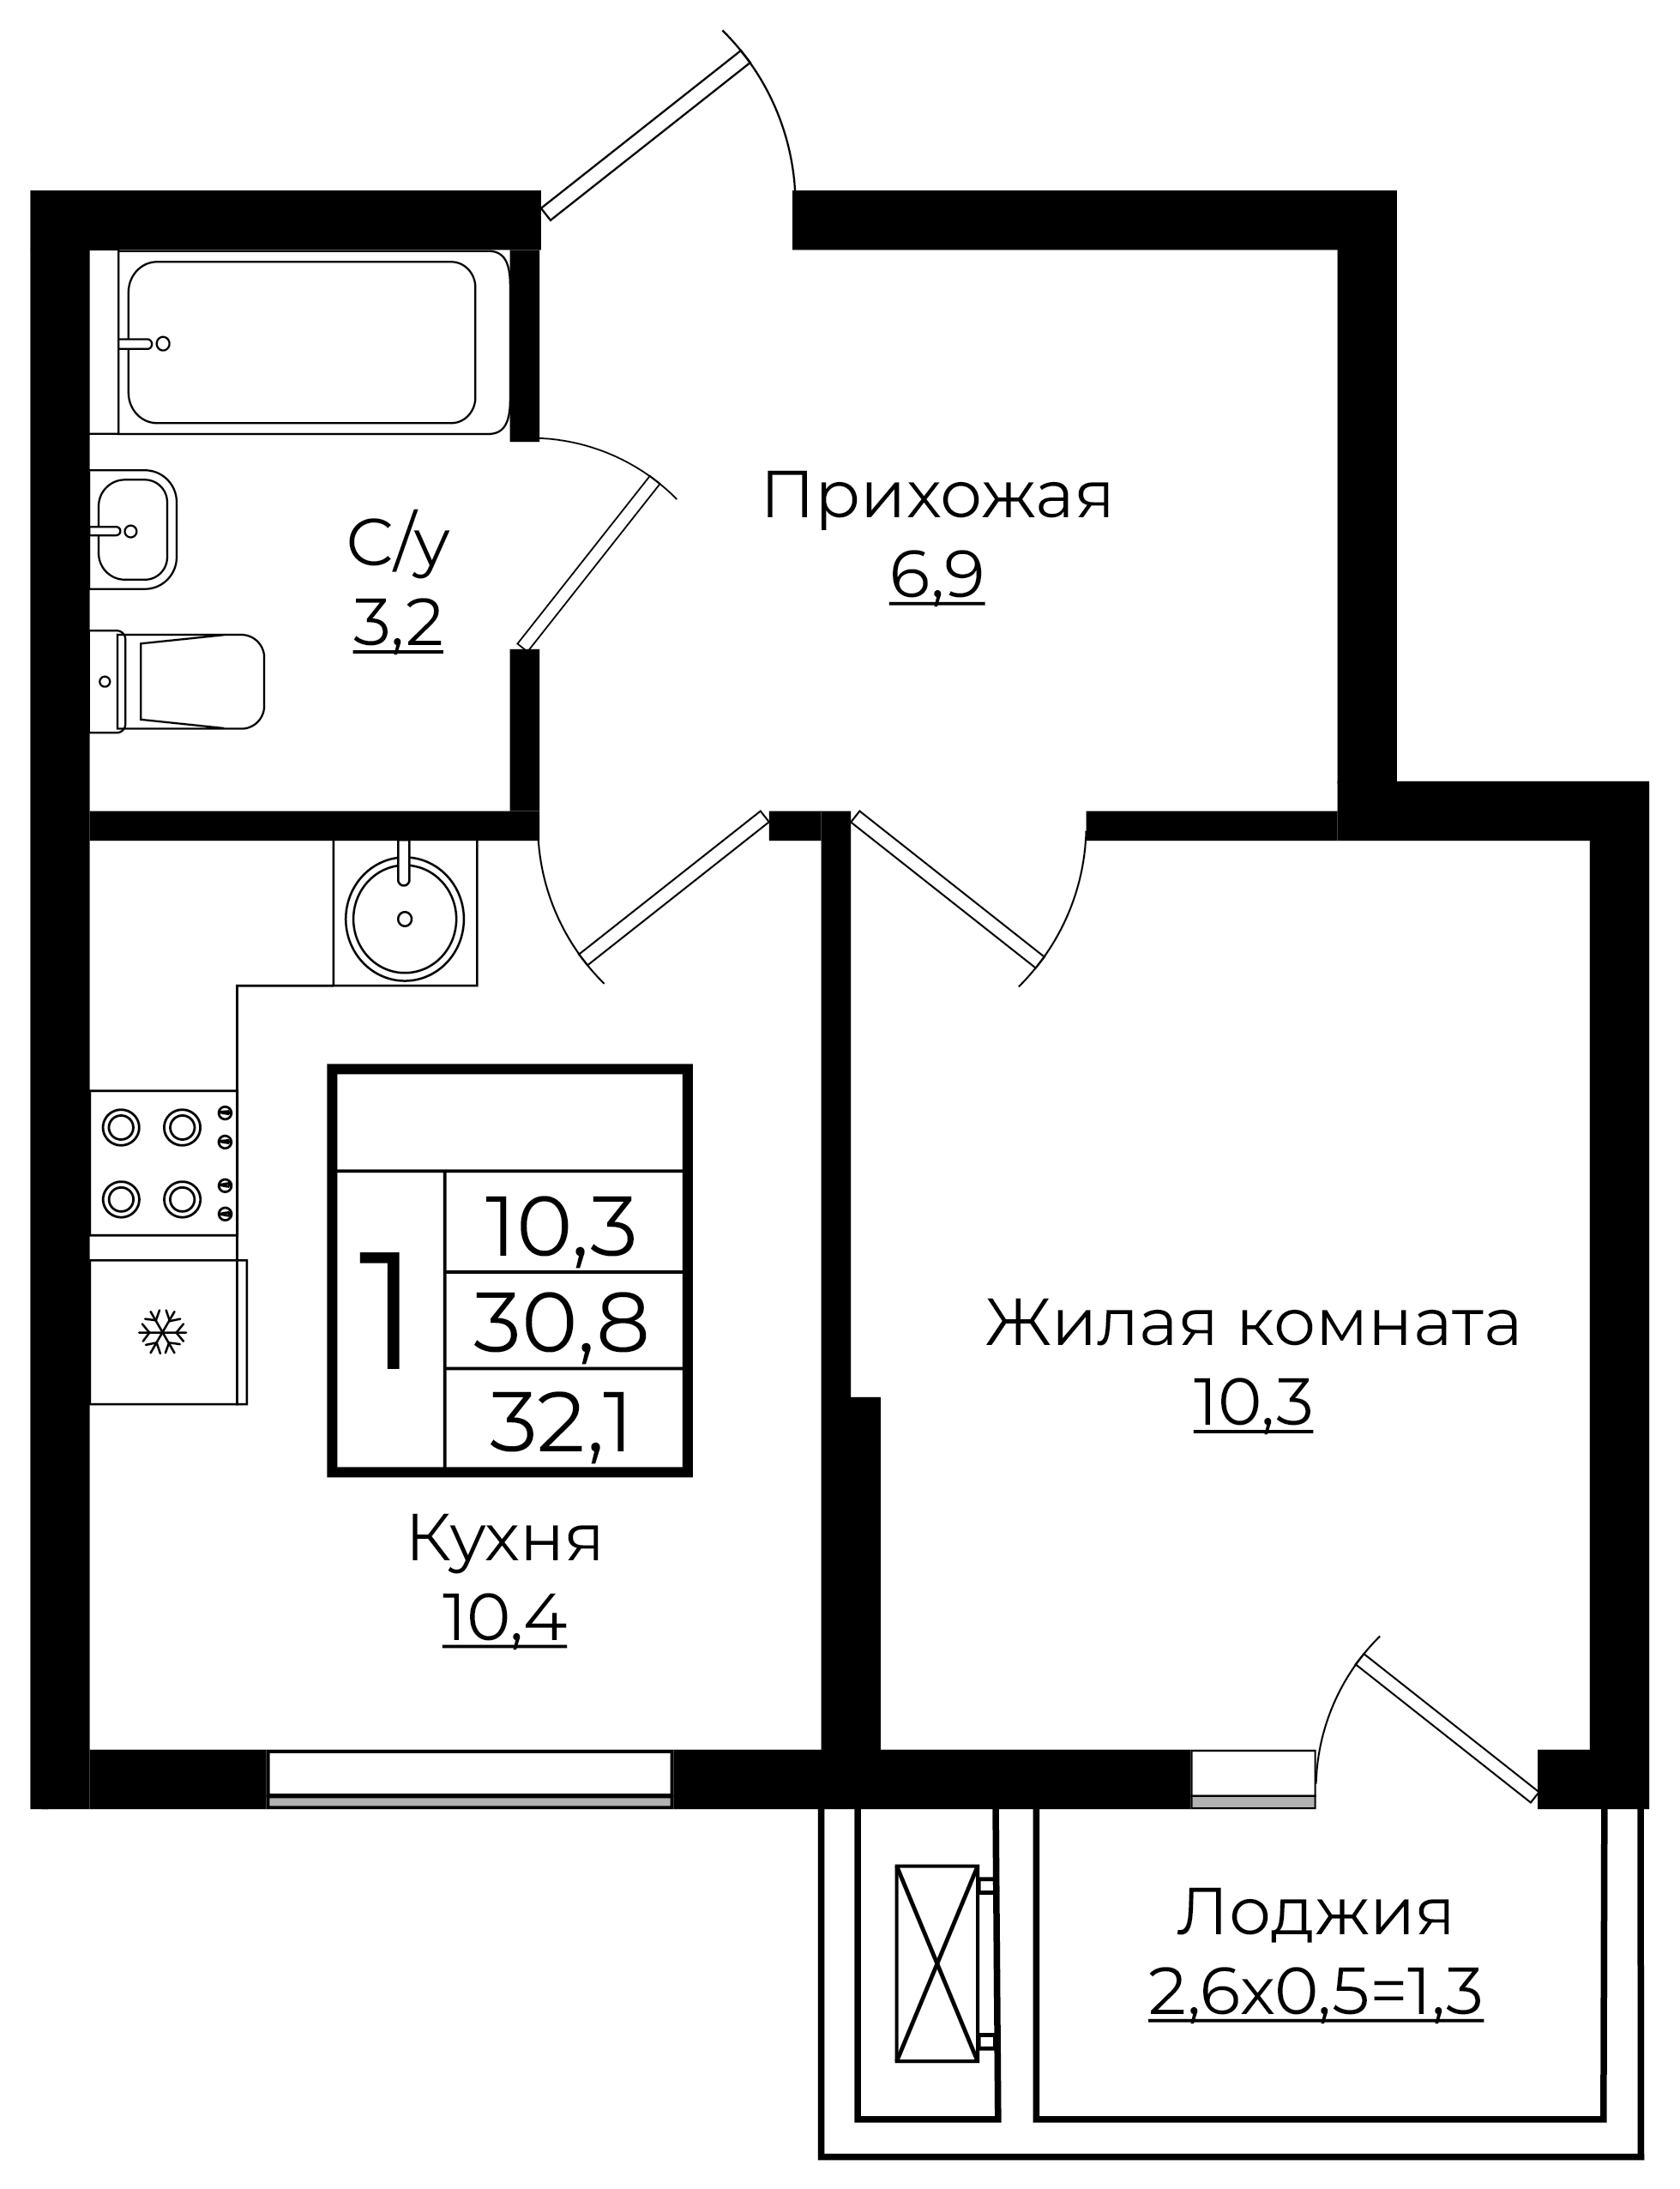 1-комнатная 32.1 м2